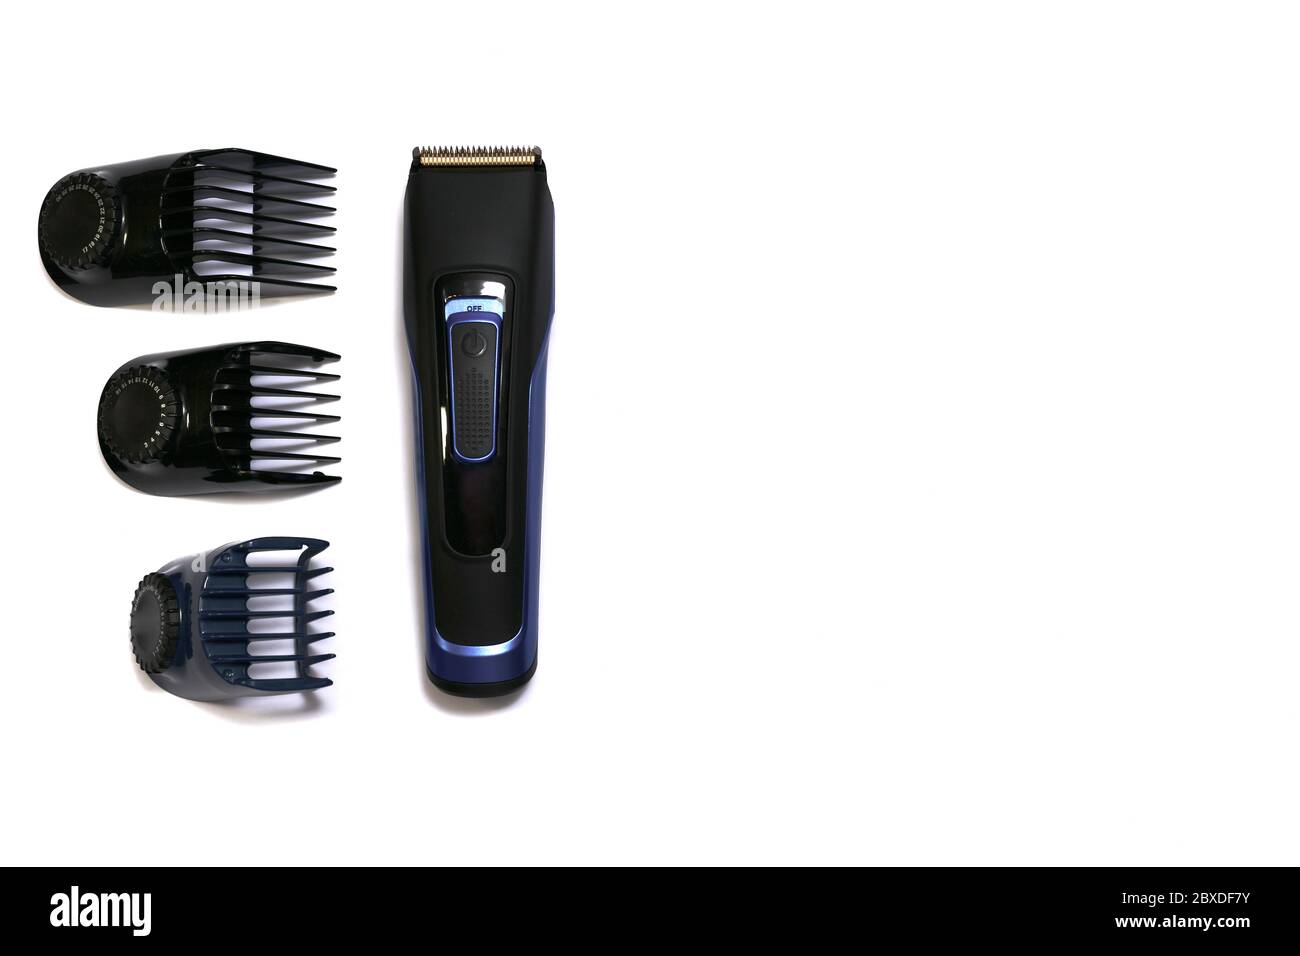 Eine Haarschneide-Maschine und drei Düsen, Seite an Seite auf weißem Hintergrund. Stockfoto